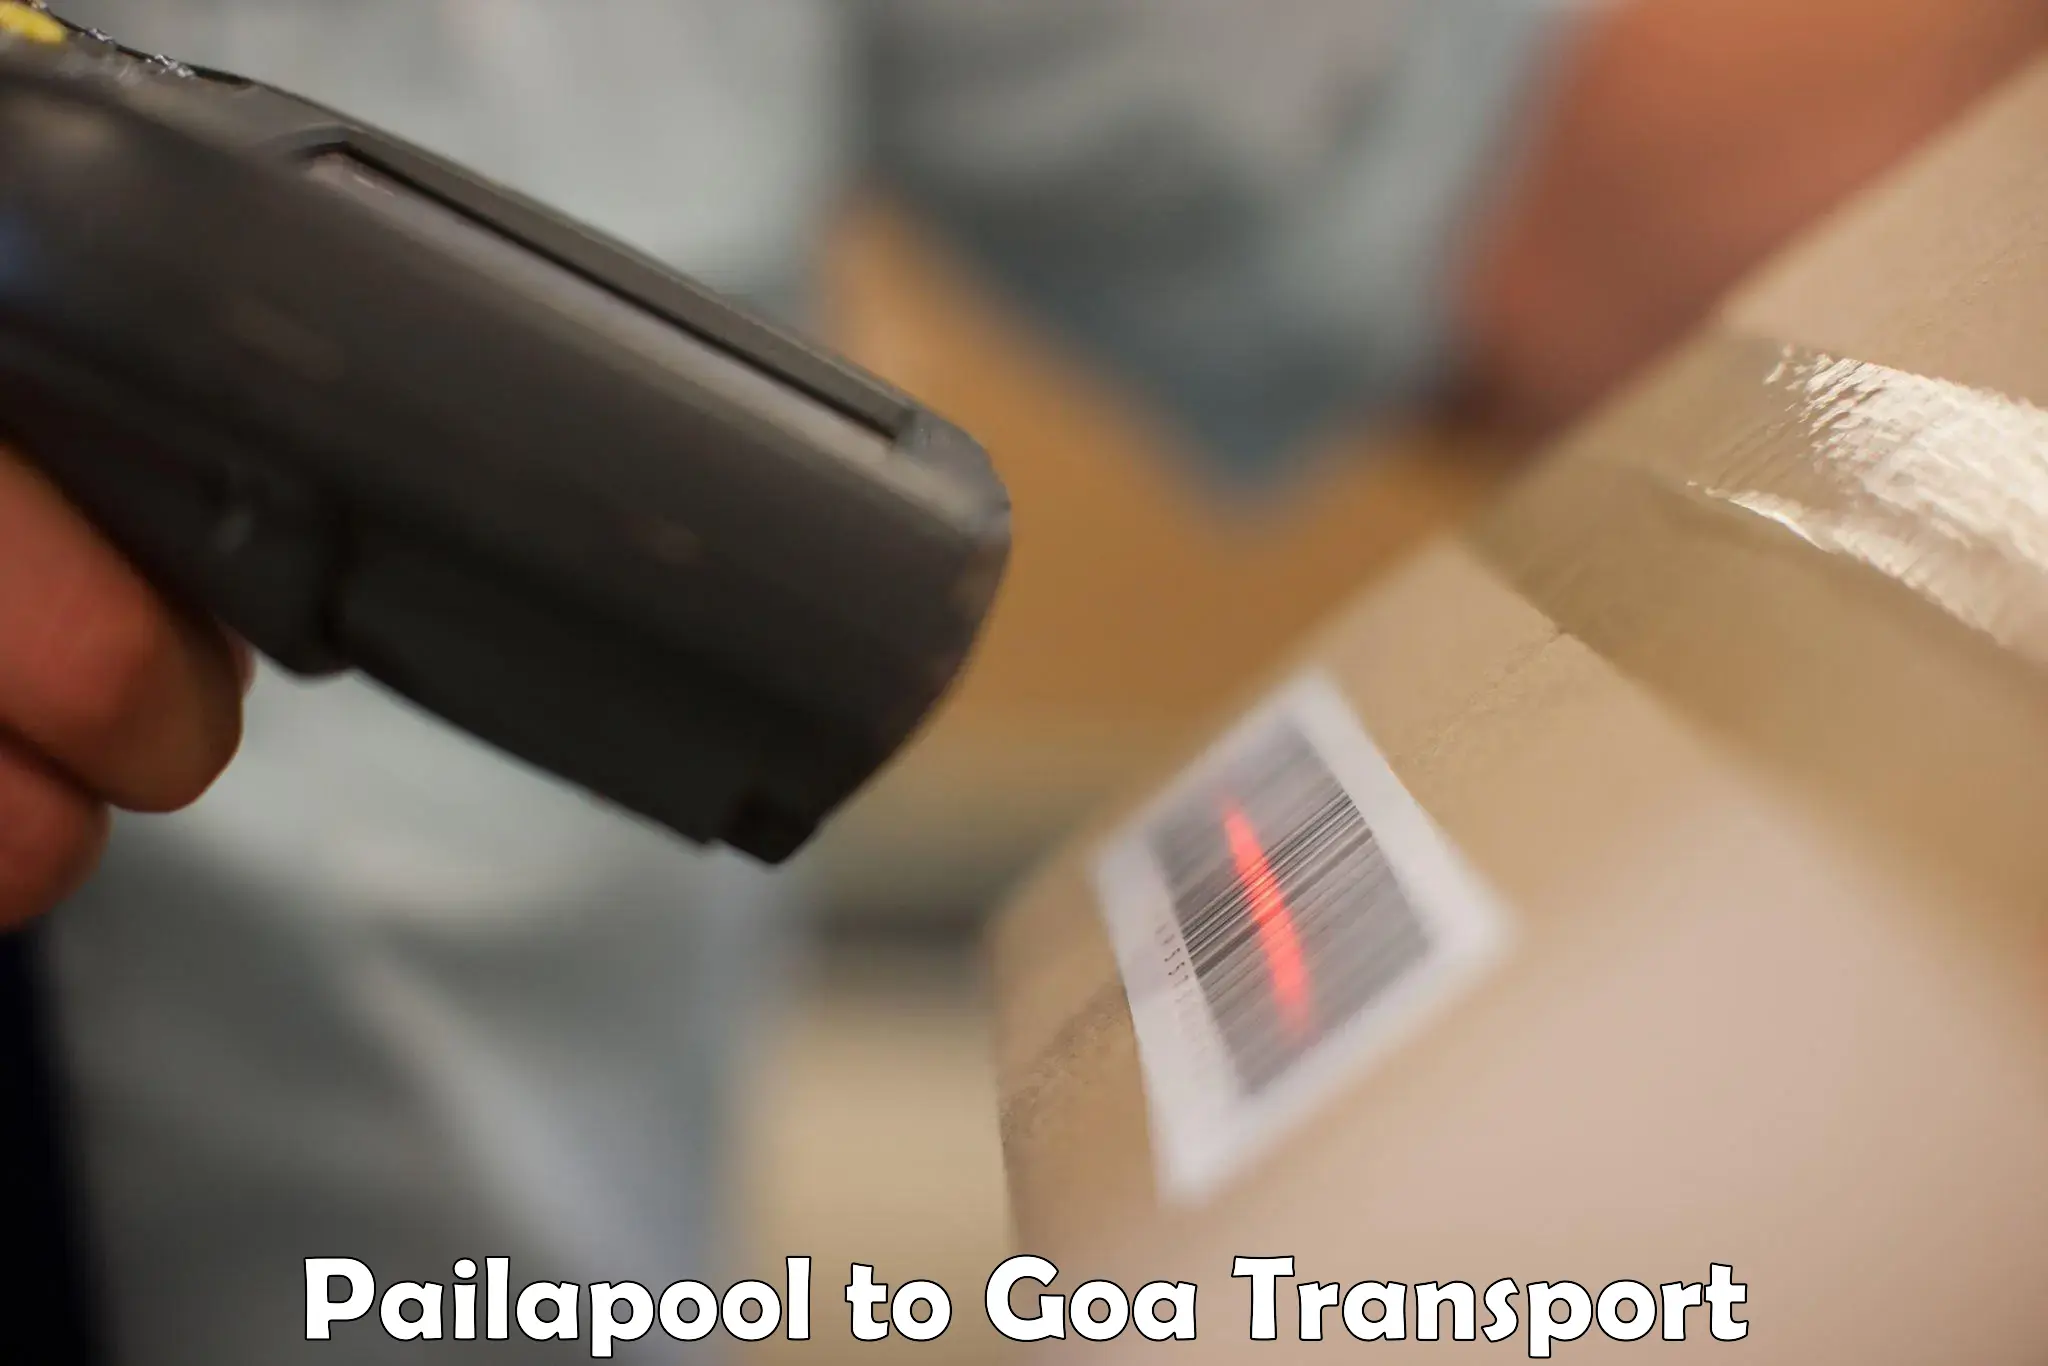 Daily transport service Pailapool to Panaji